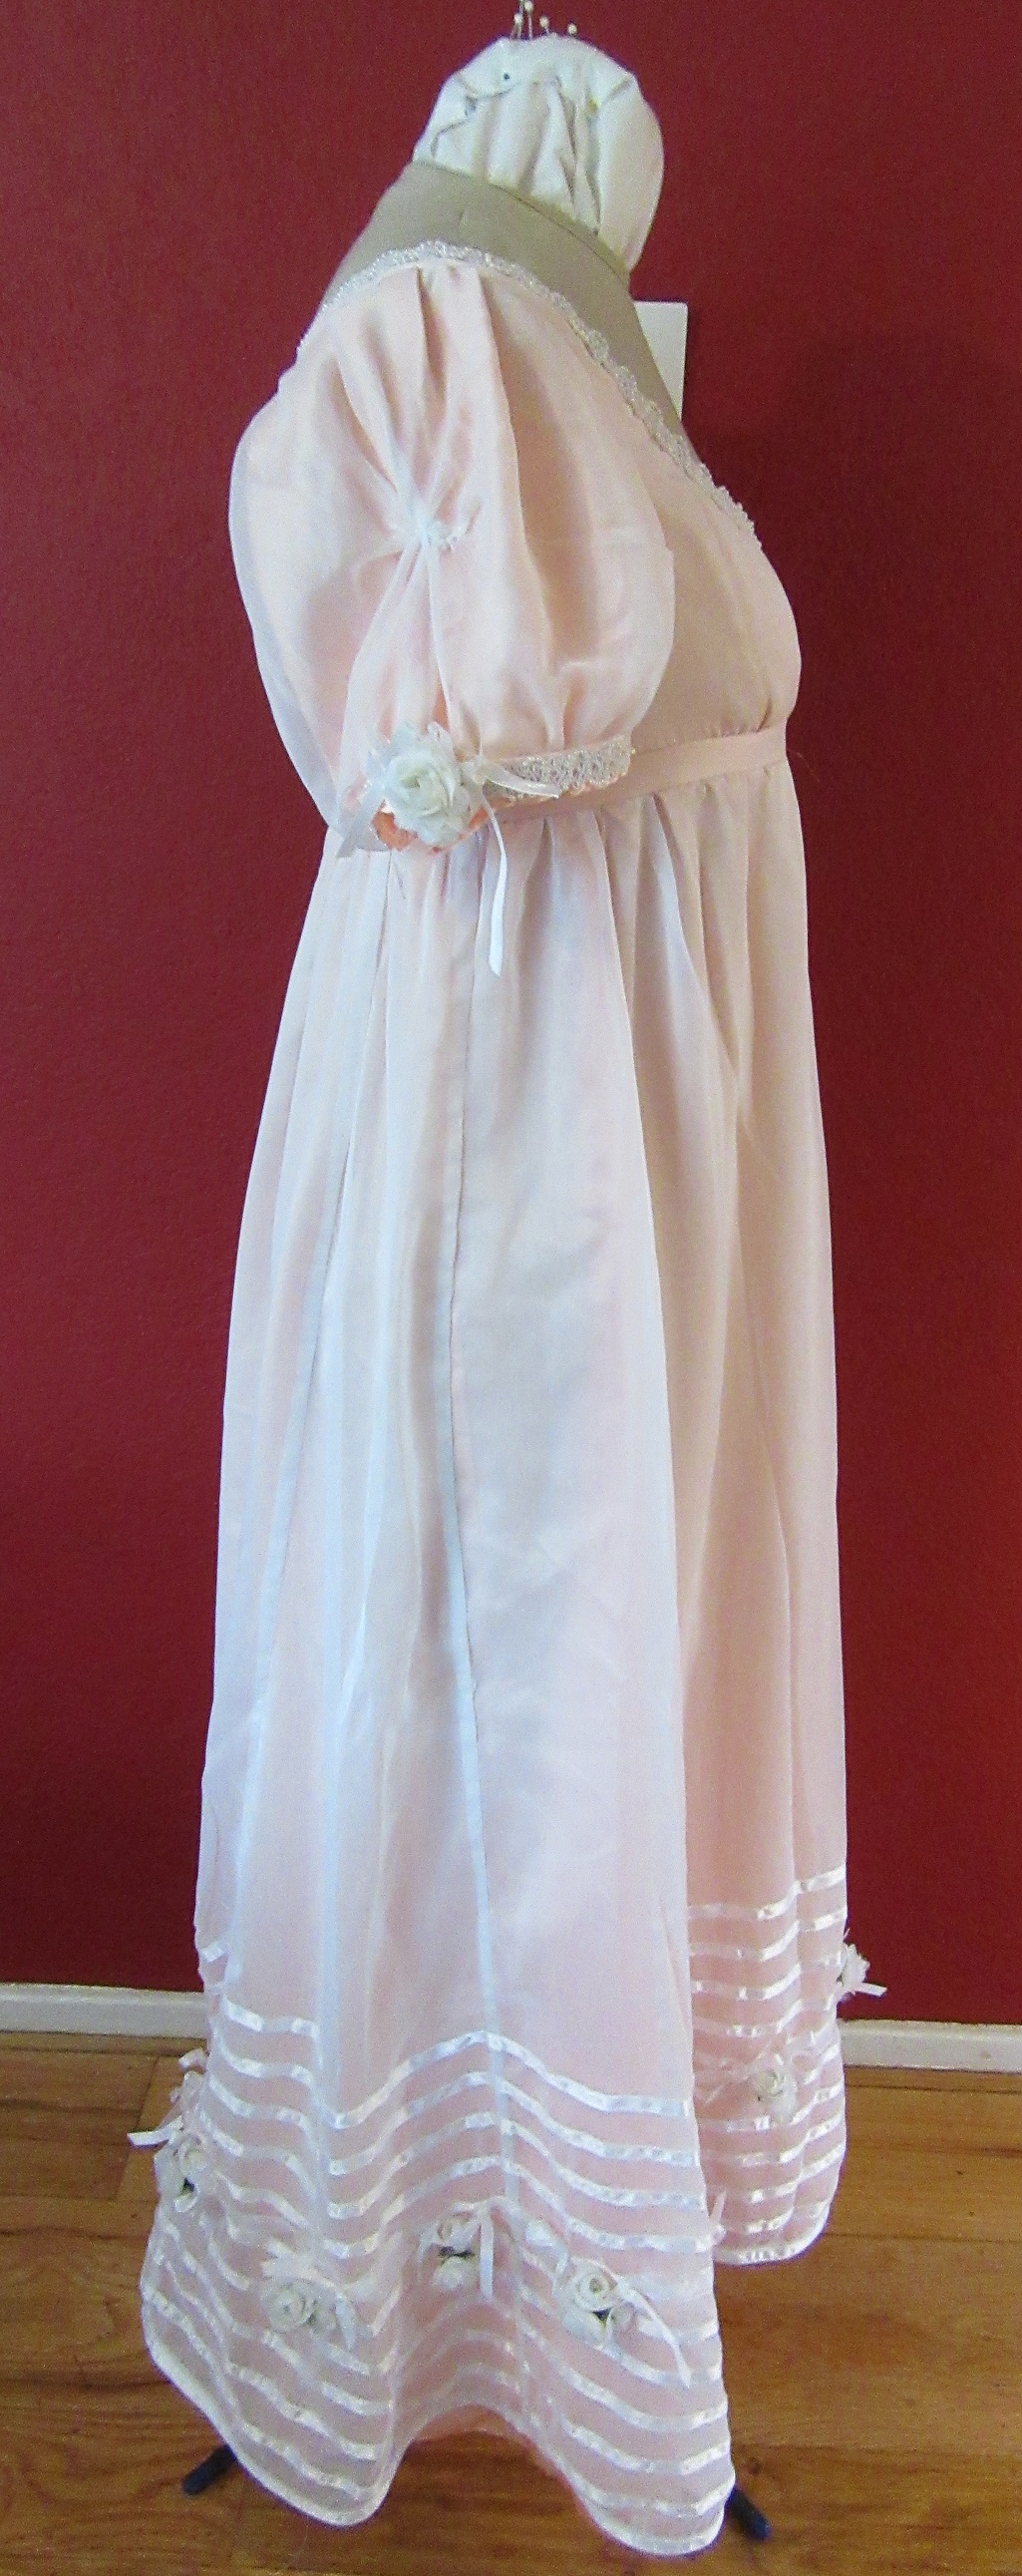 Regency Peach with White Sheer Ball Gown  Right. La Mode Bagatelle Regency Wardrobe